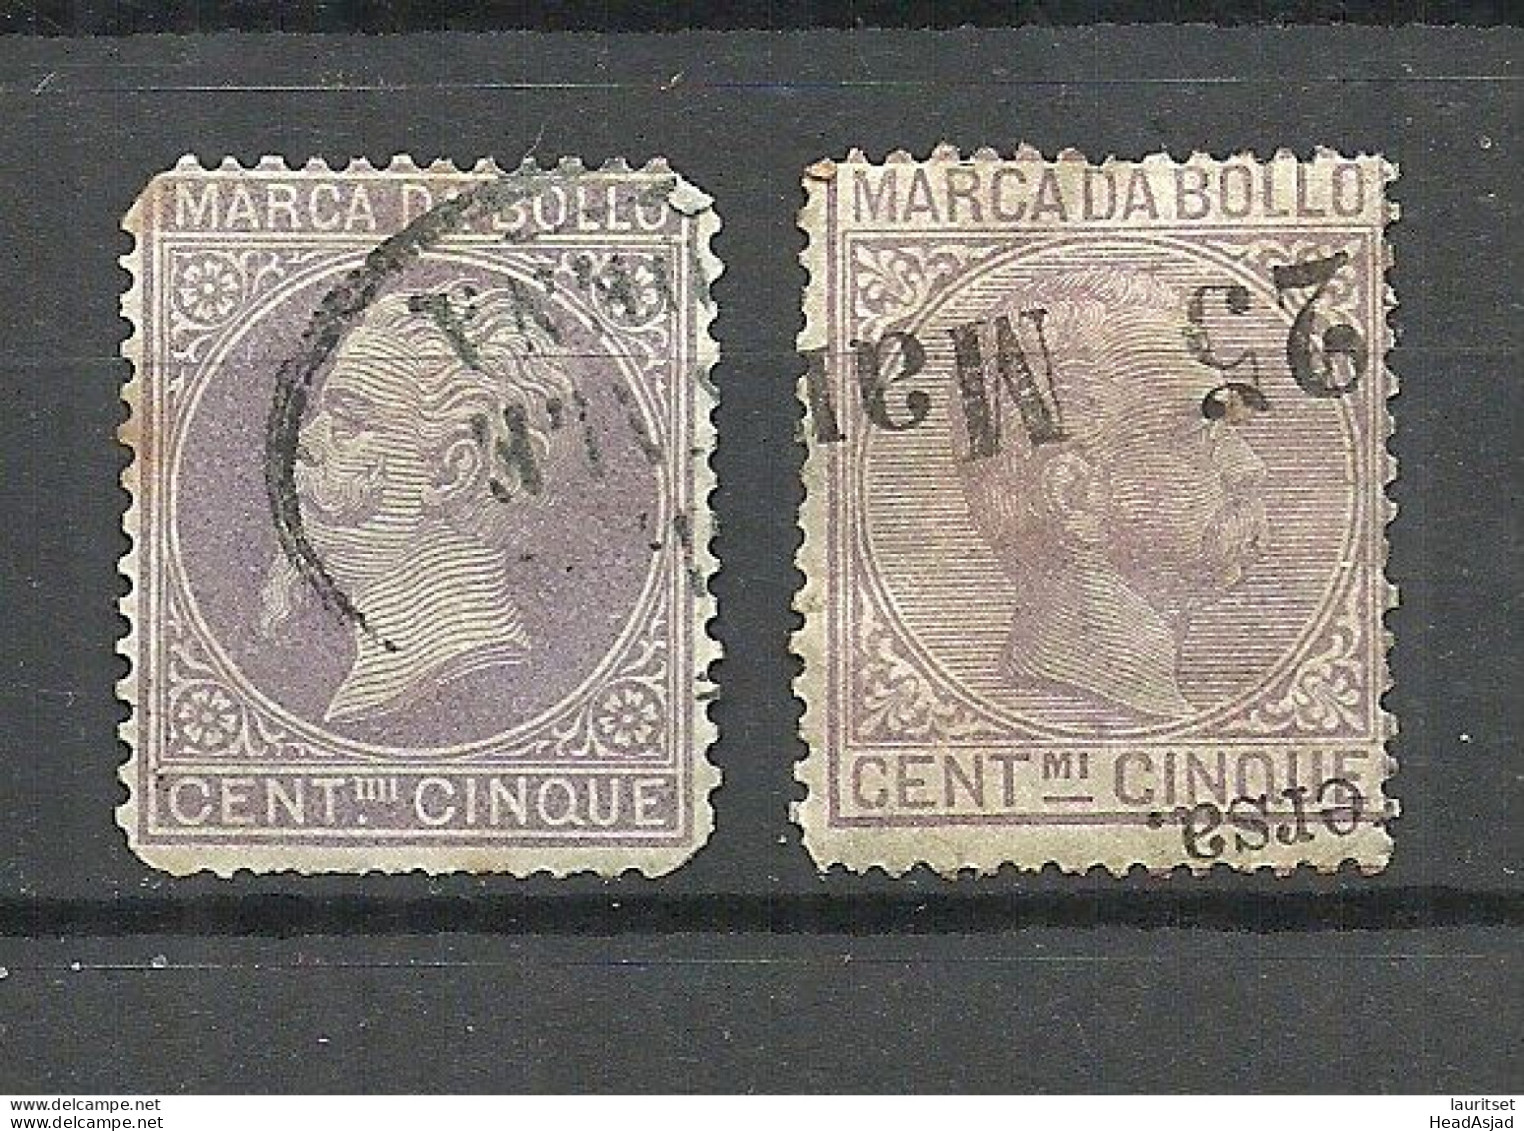 ITALIA ITALY Fiscaux Fiscal Tax Marca Da Bollo, 2 Stamps, O - Revenue Stamps